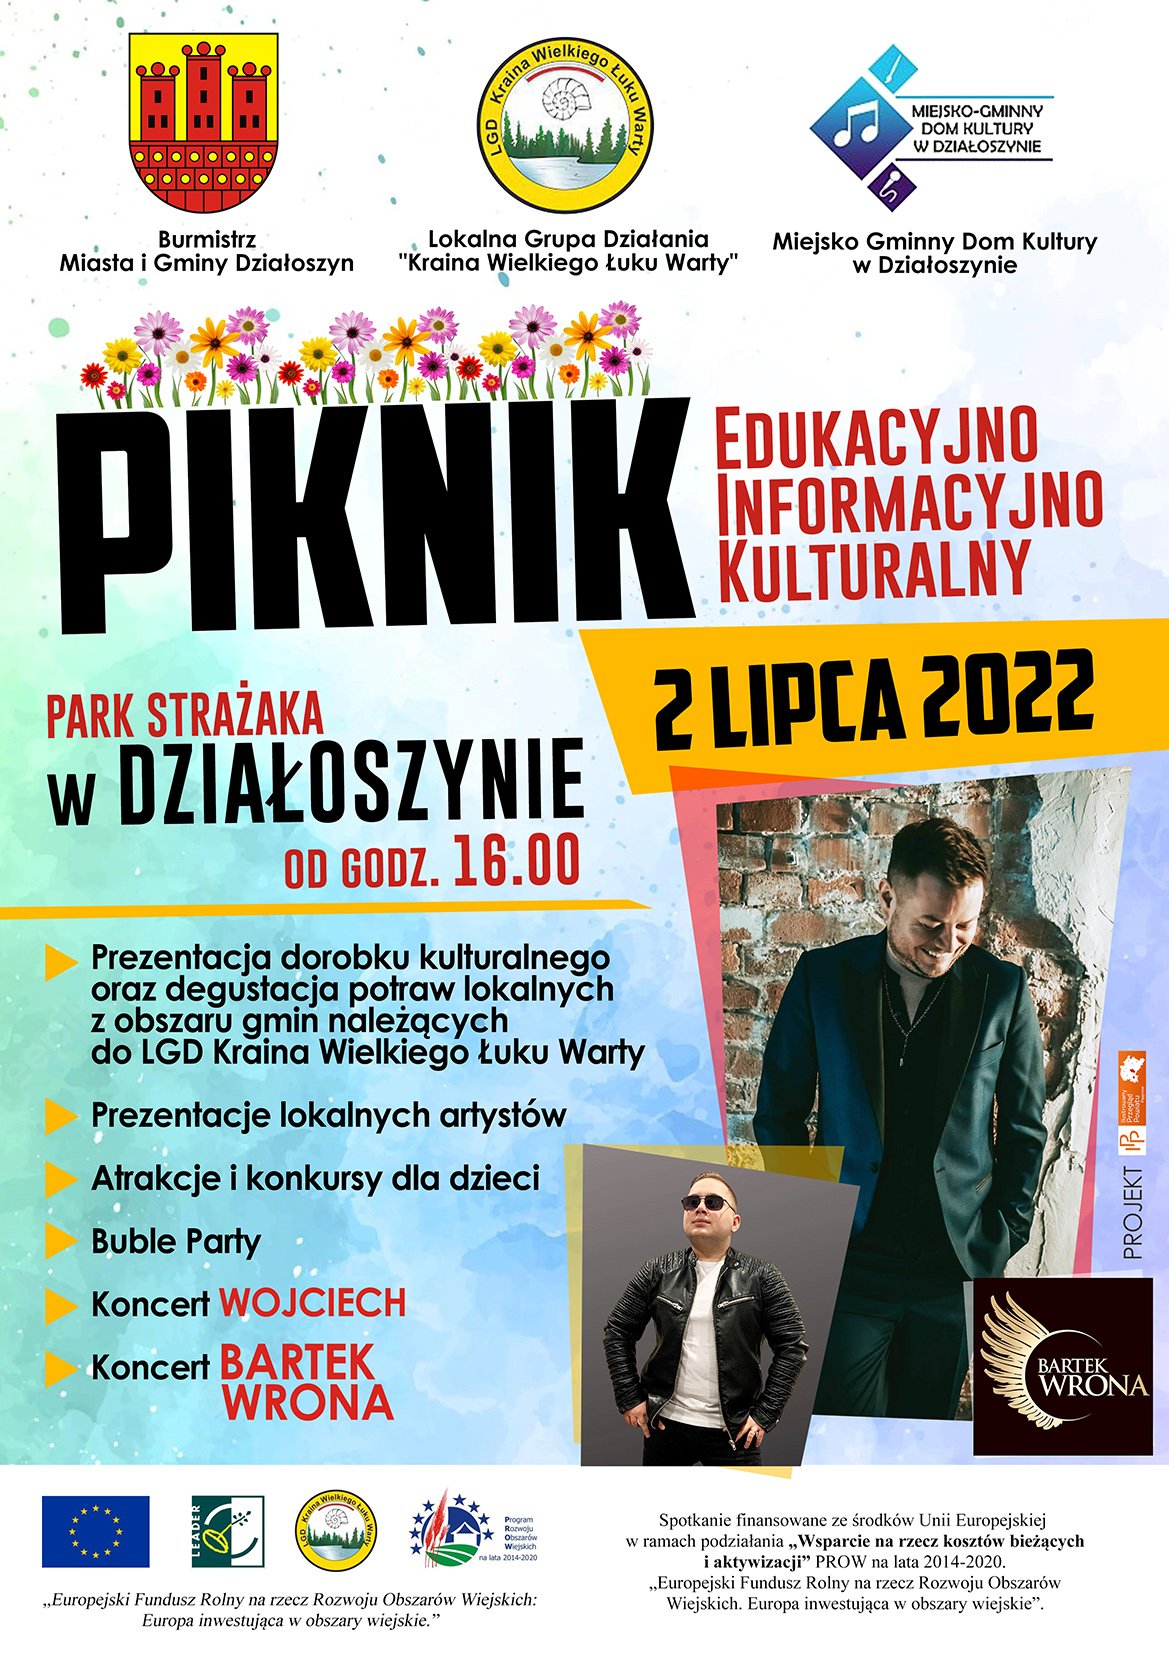 2022-07-02 - Piknik edukacyjny